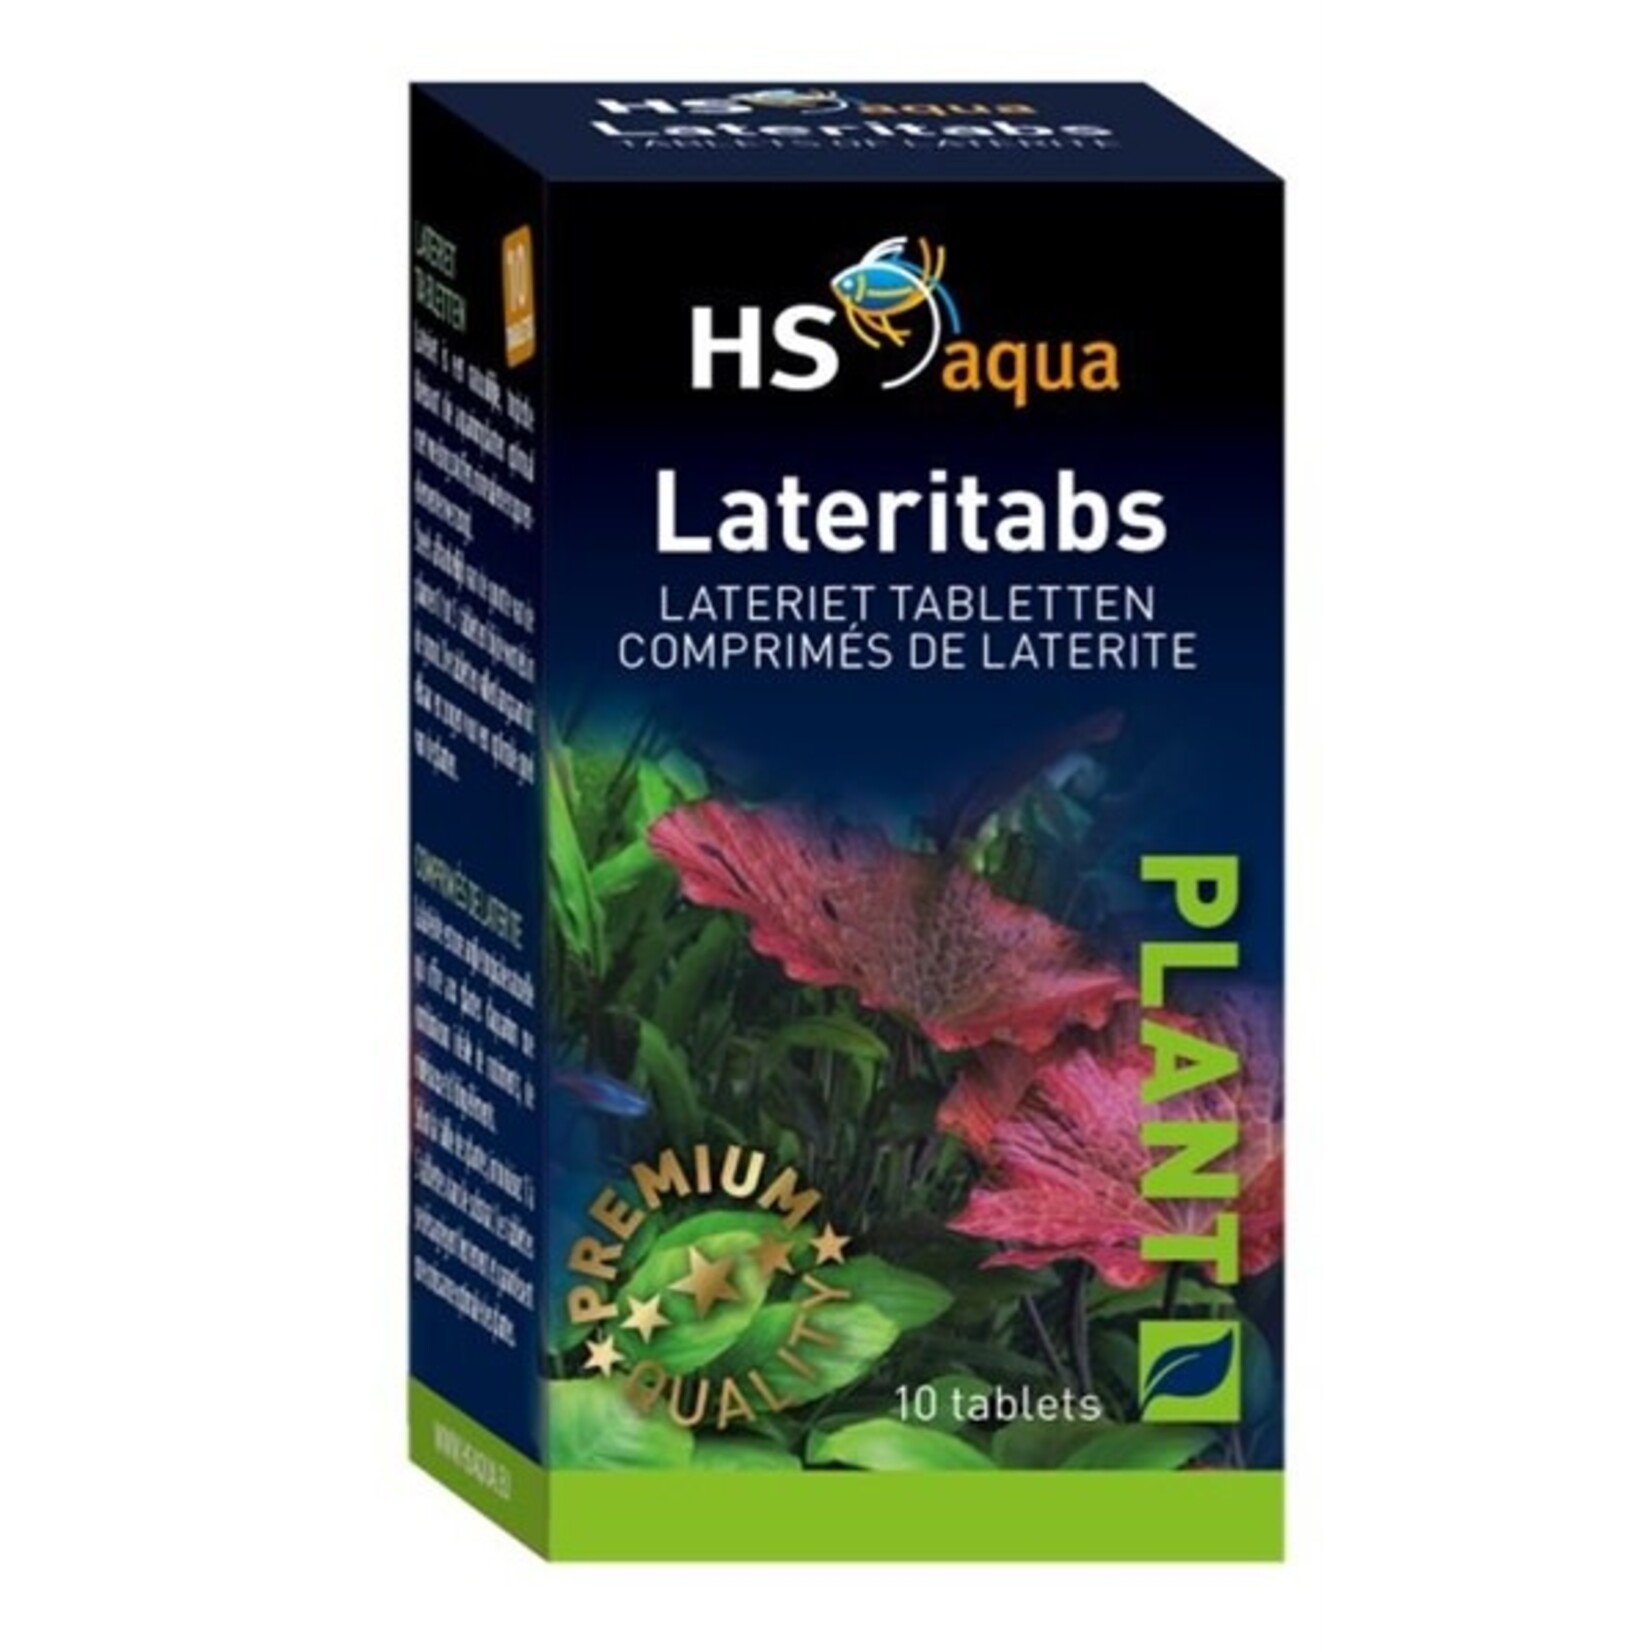 HS Aqua Lateritabs 10 tabletten